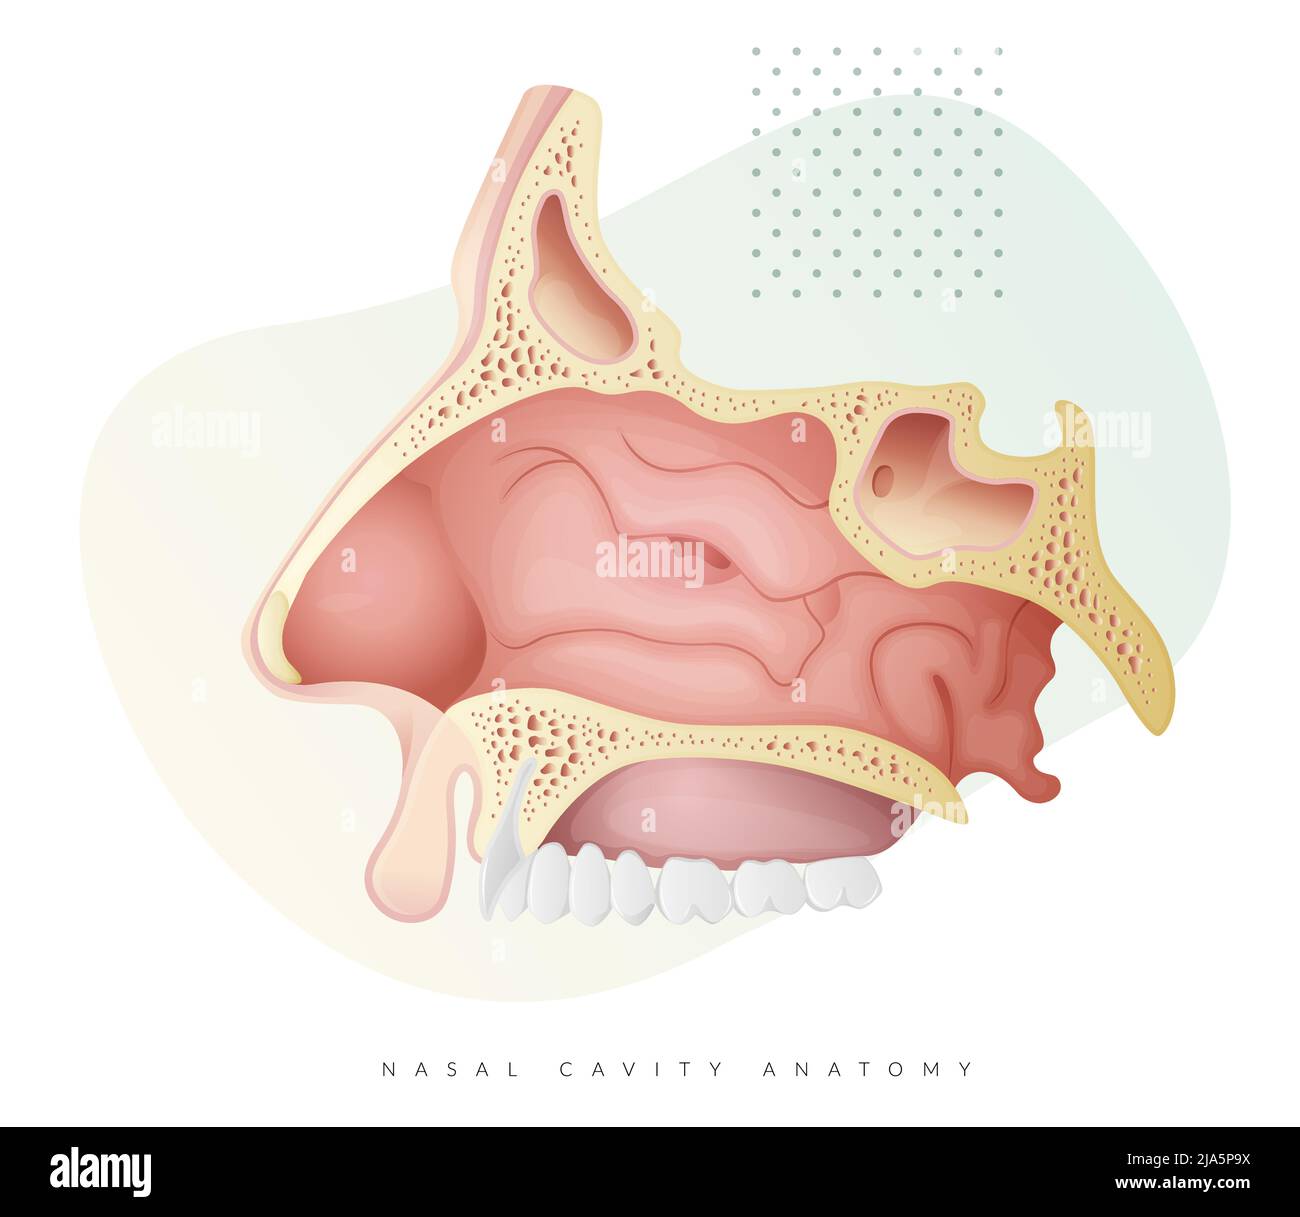 Anatomie de la cavité nasale - Illustration en stock sous la forme d'un fichier EPS 10 Illustration de Vecteur